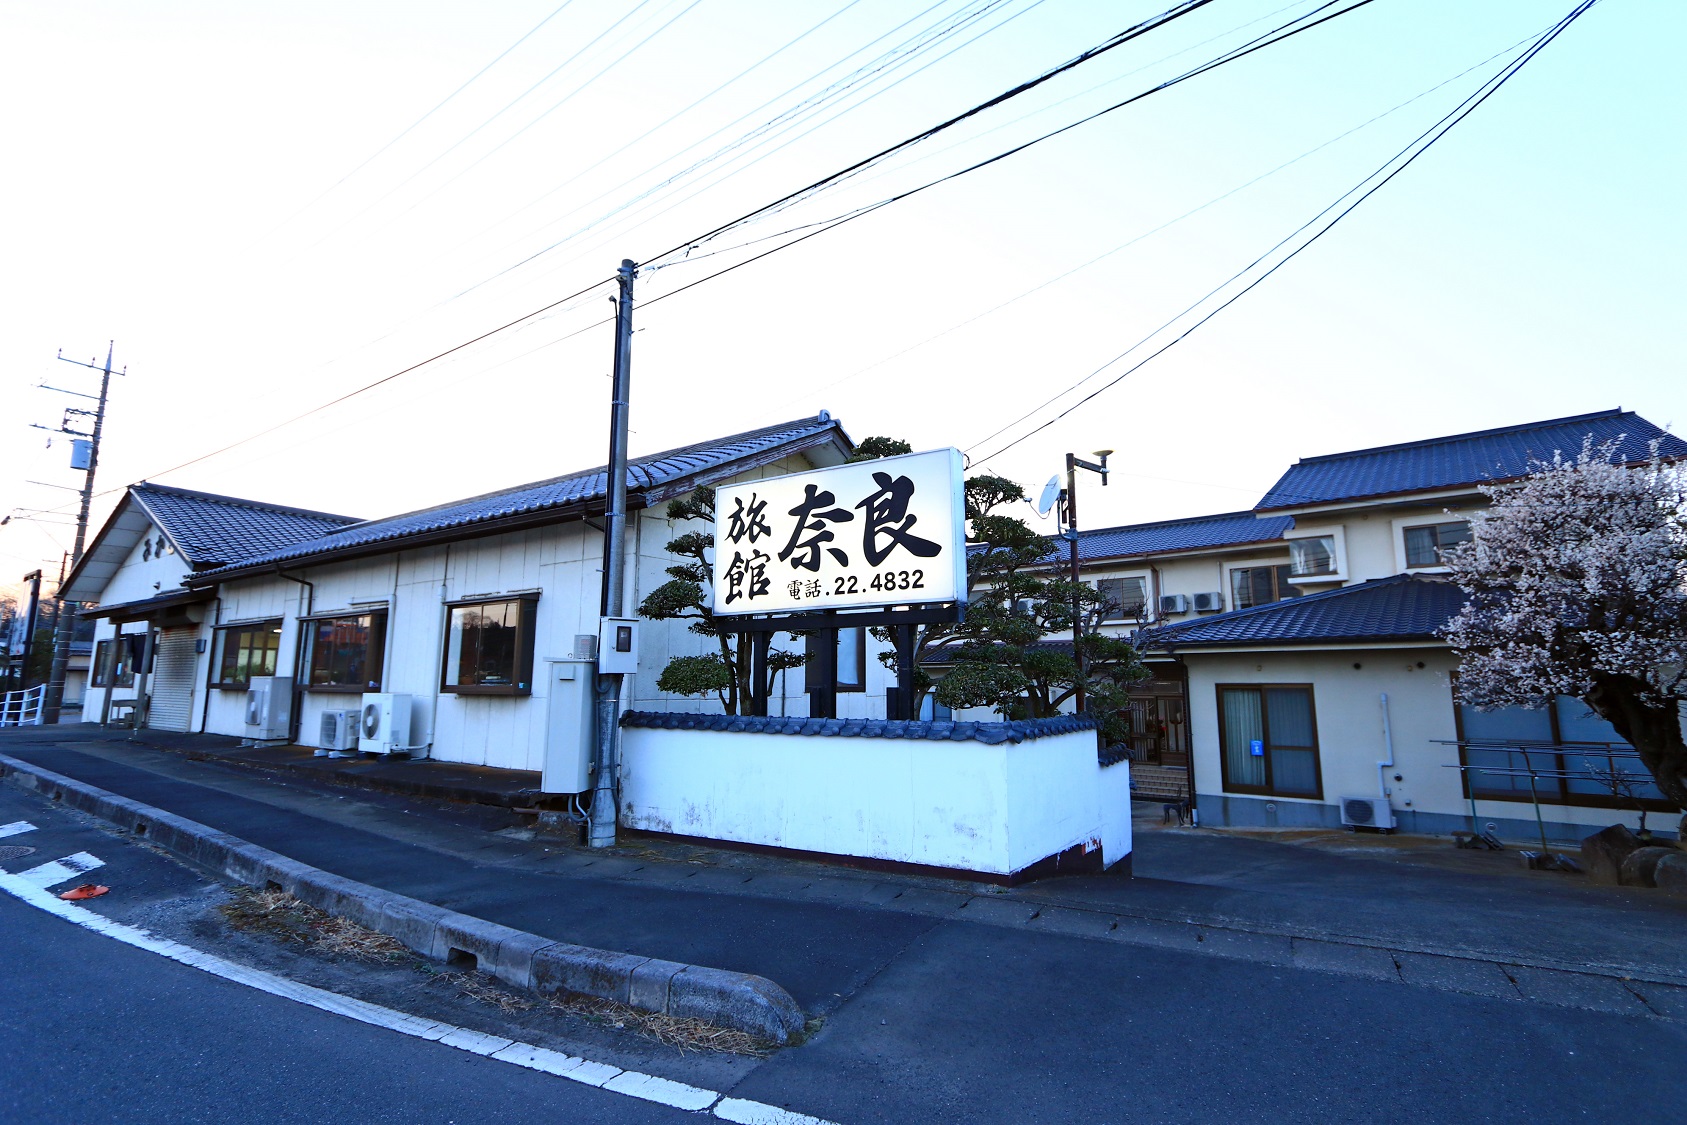 レトロな食堂を営む 奈良旅館 image